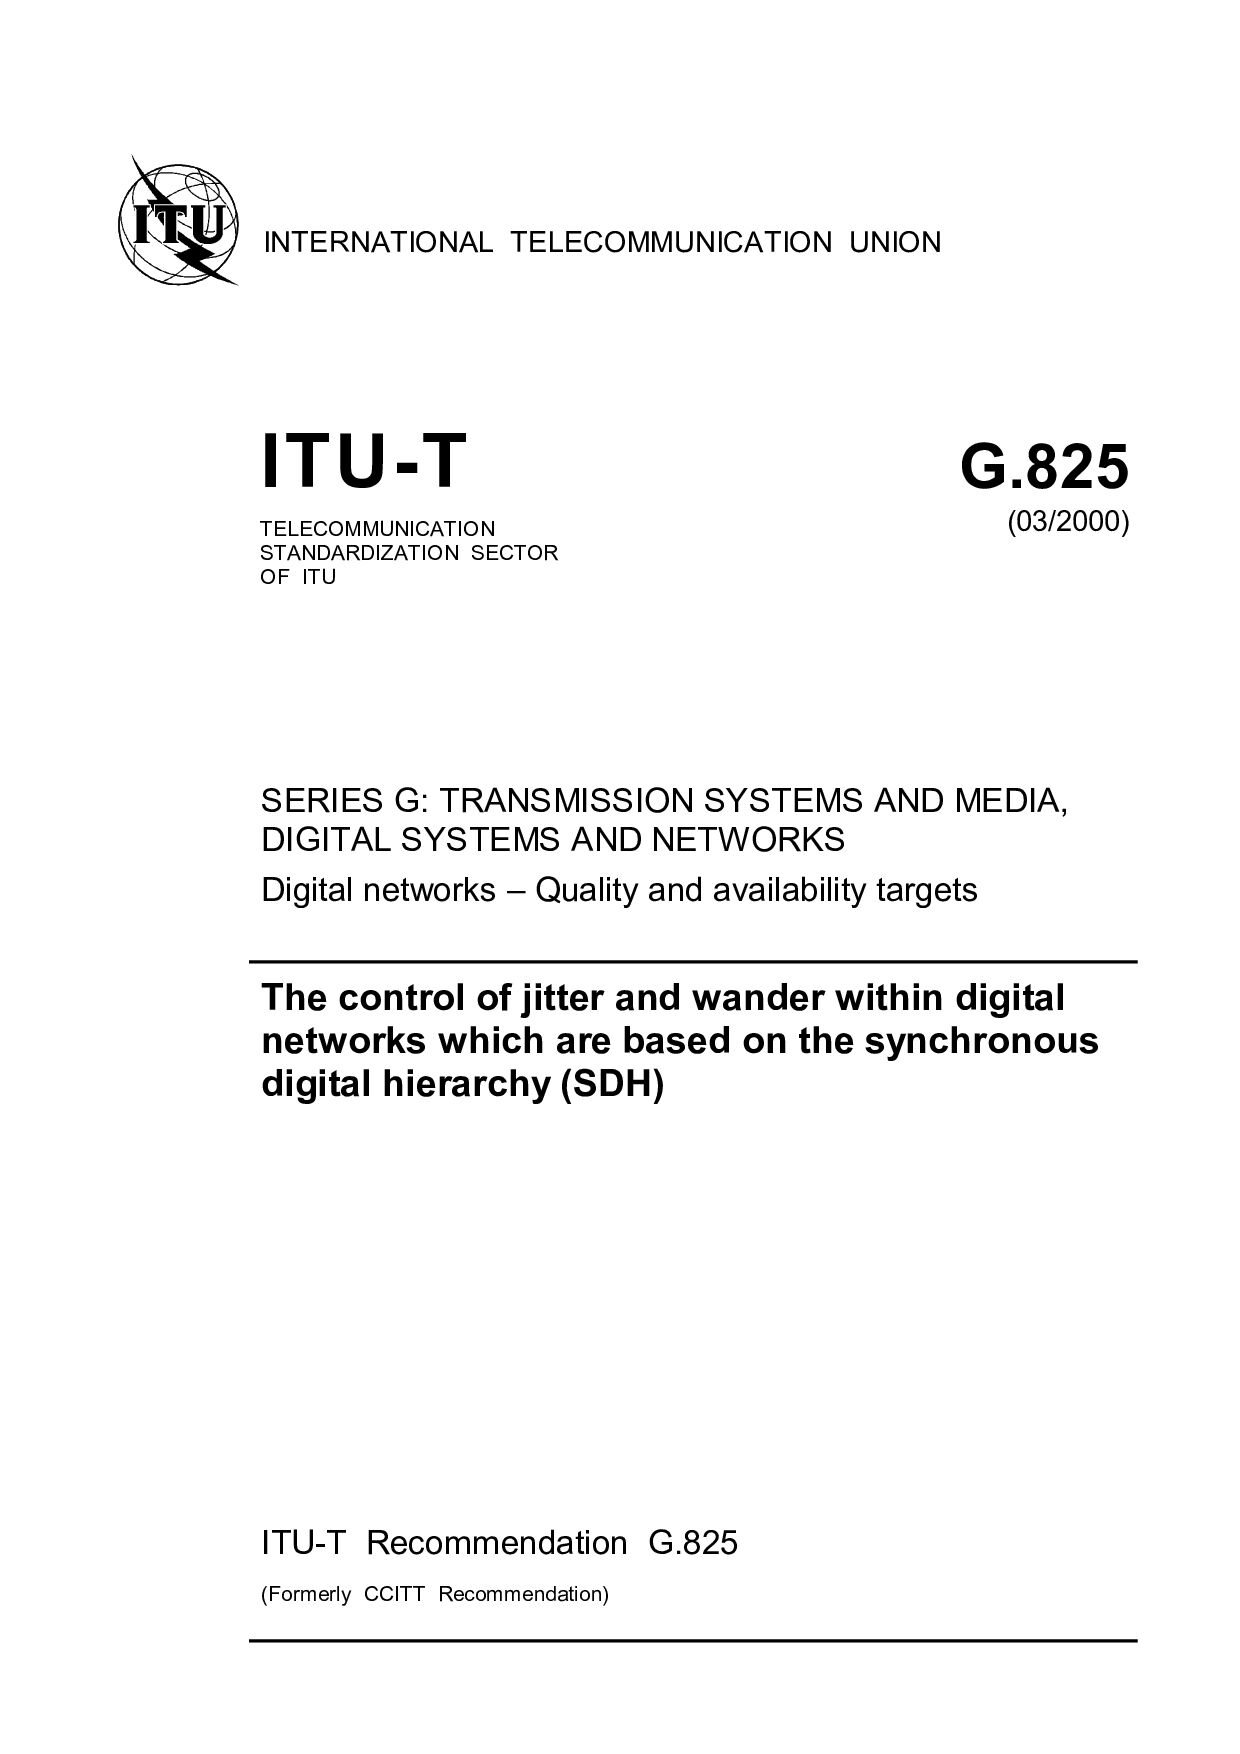 ITU-T G.825-2000